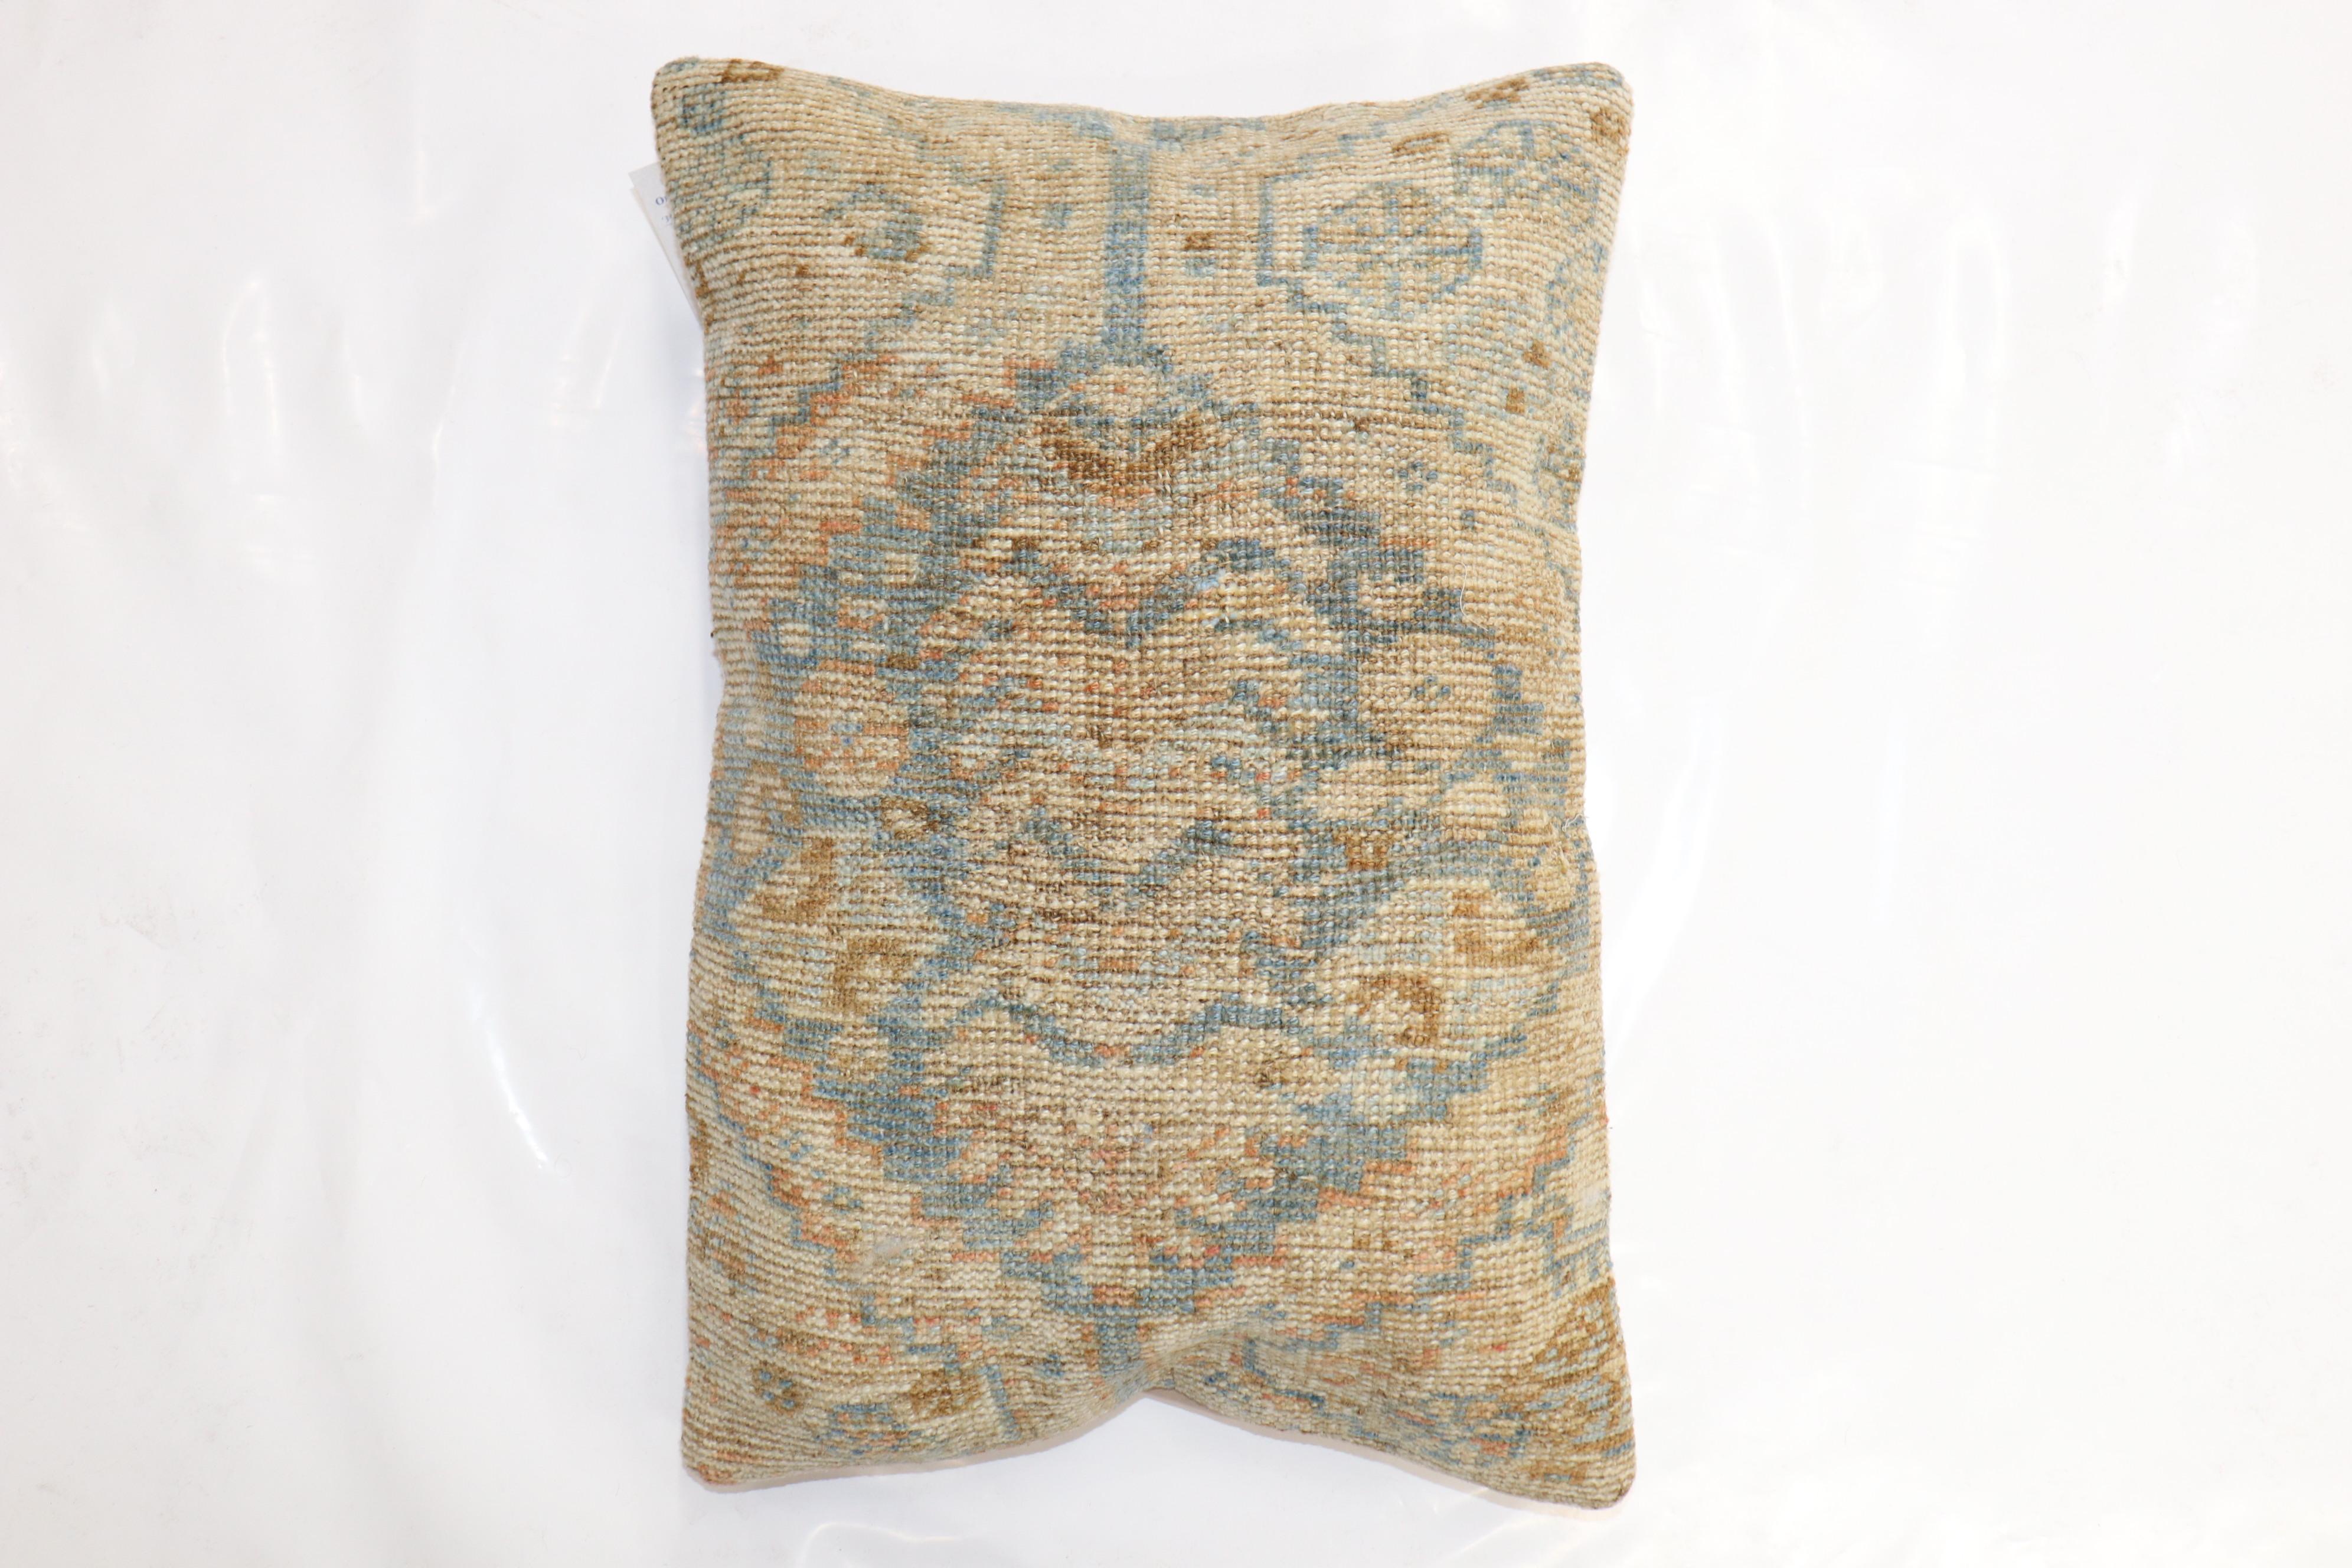 Kissen aus einem antiken persischen Bakshaish-Teppich aus dem späten 19. Jahrhundert mit Baumwollrücken. Verschluss mit Reißverschluss.

Maße: 16'' x 24''.